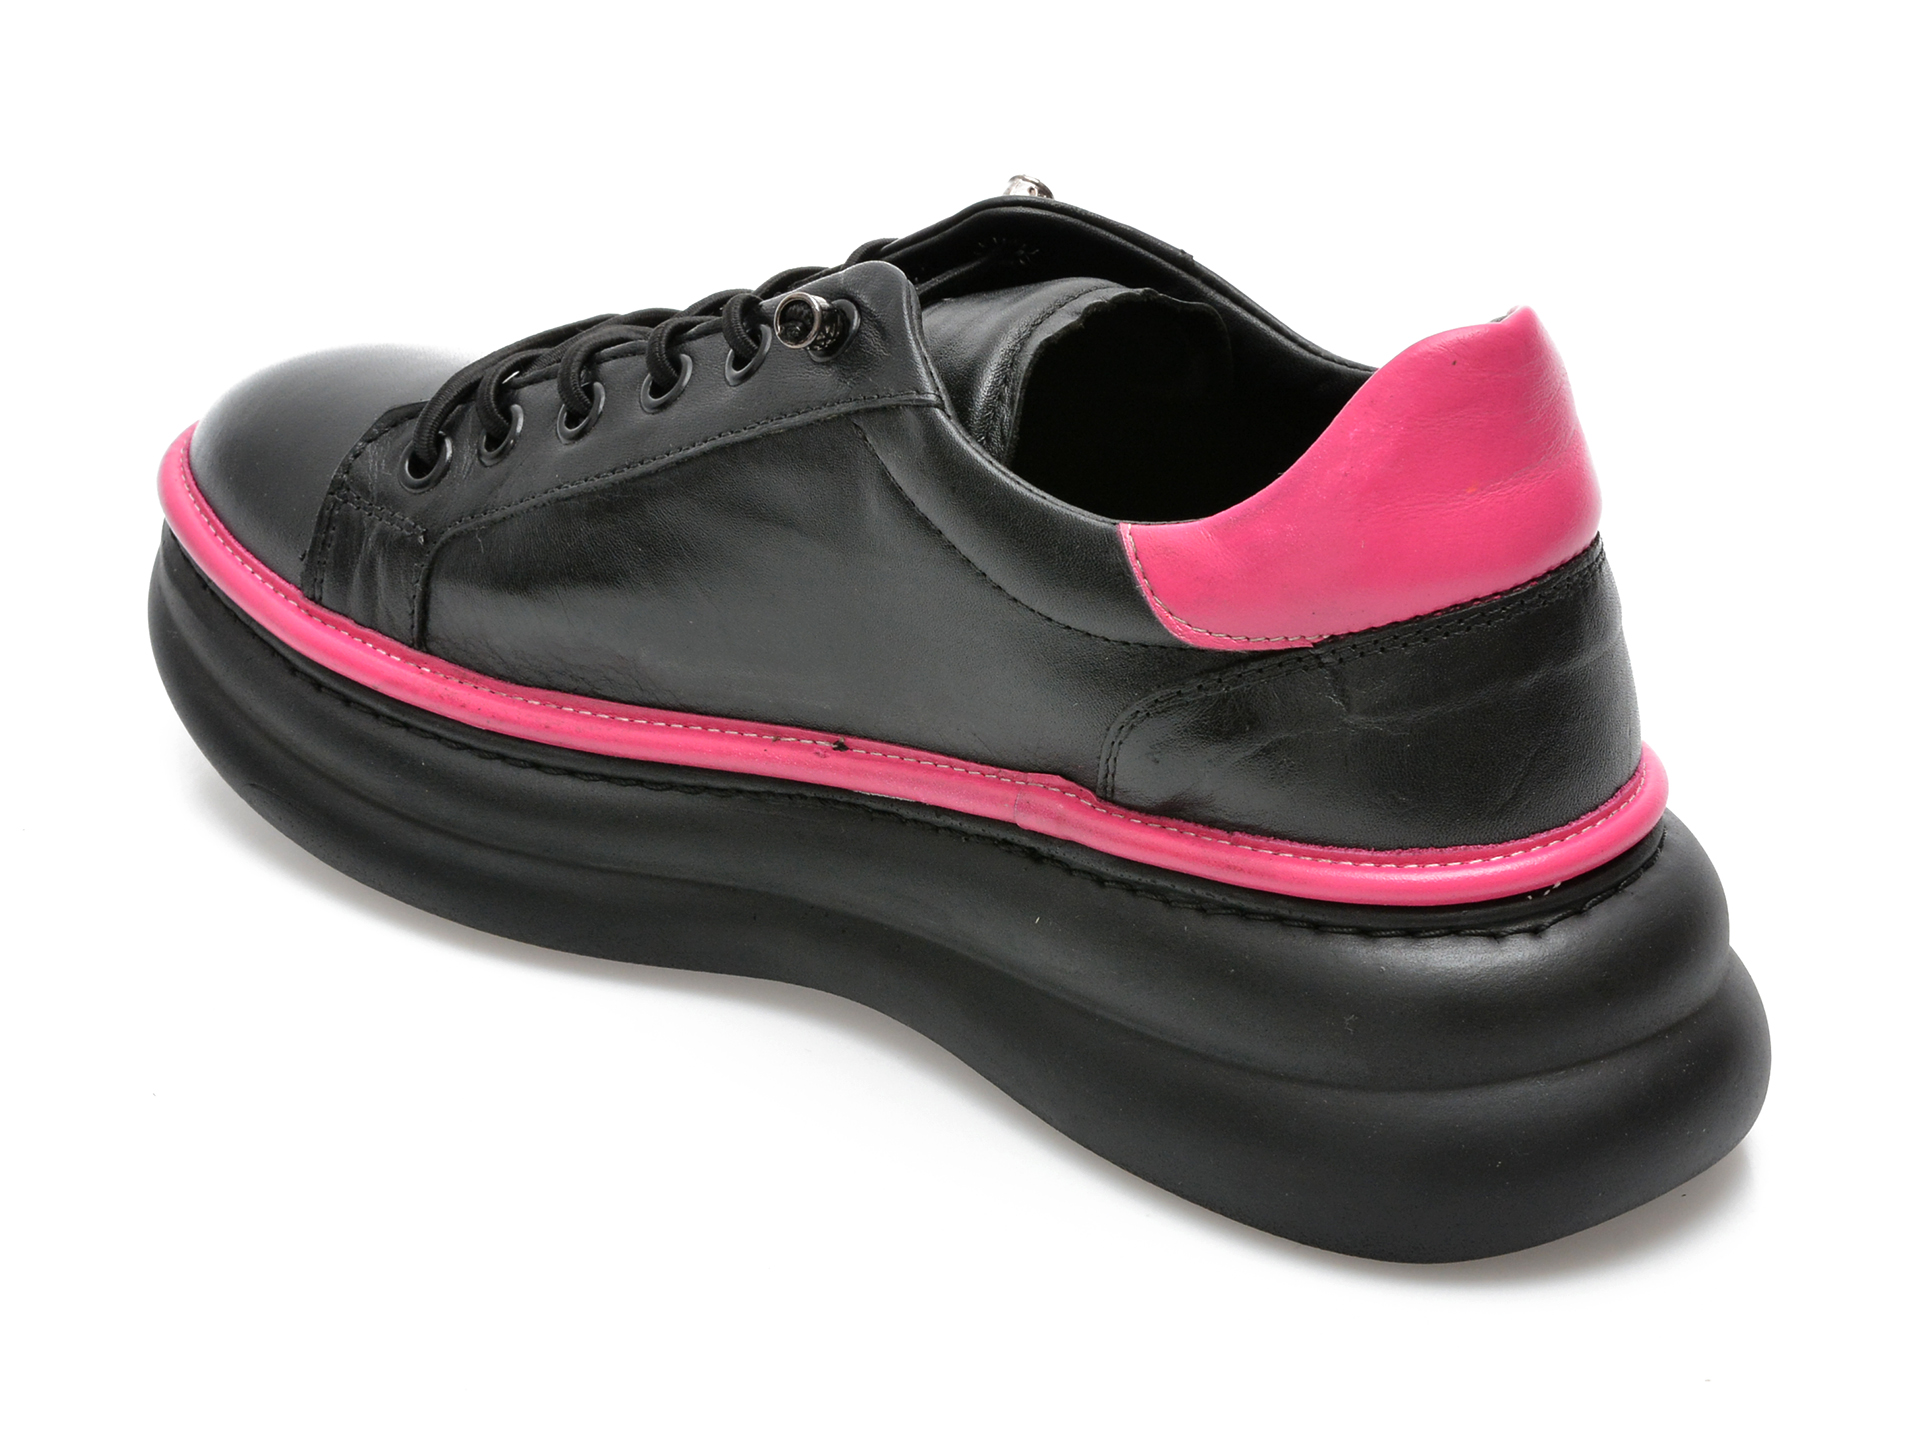 Comandă Încălțăminte Damă, la Reducere  Pantofi GRYXX negri, 5243036, din piele naturala Branduri de top ✓